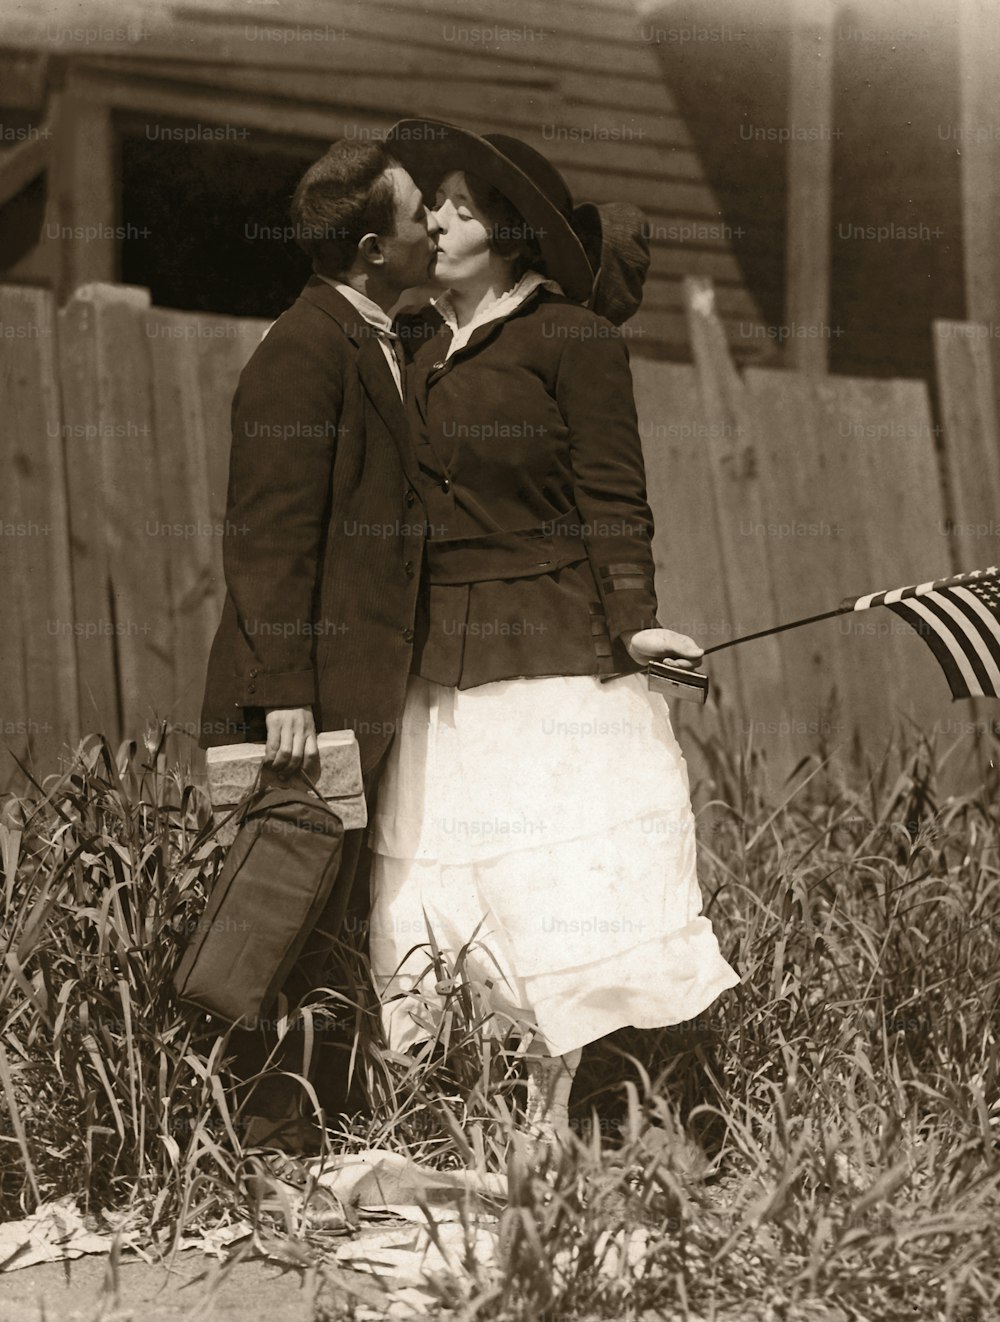 Archival image. World War I era.